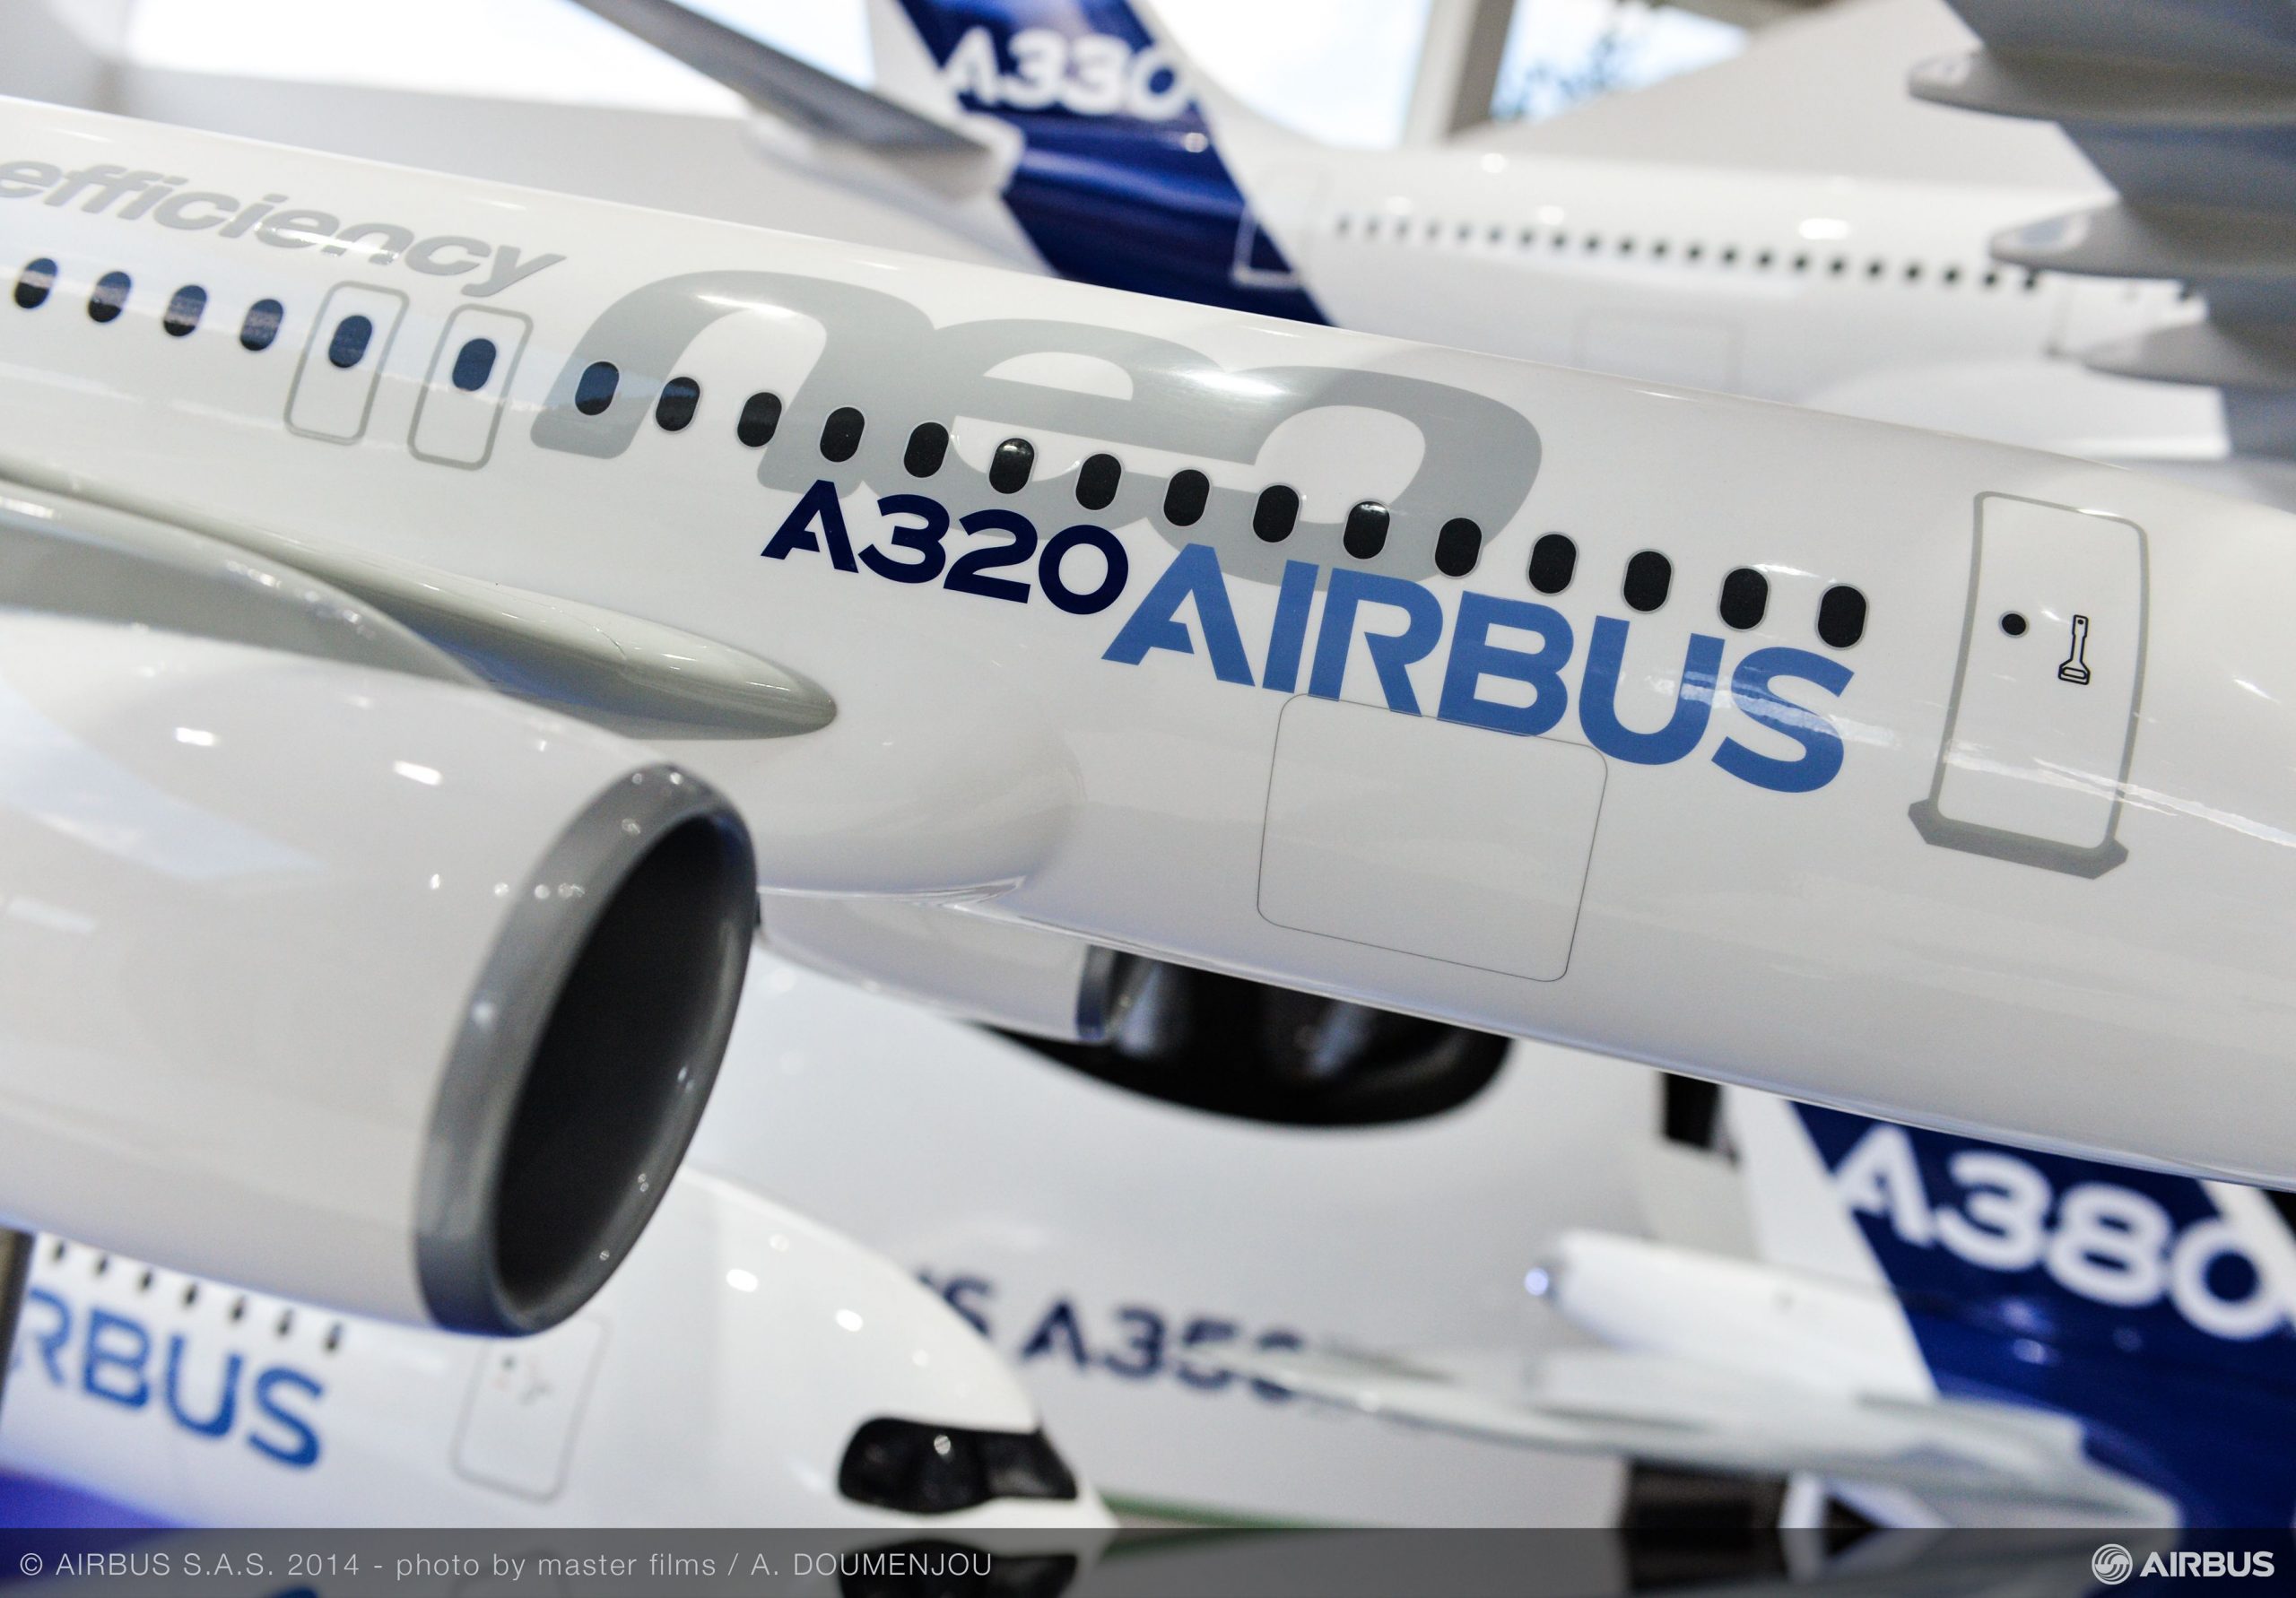 Σαουδική Αραβία-Airbus: Σε διαπραγματεύσεις για την προμήθεια περίπου 40 αεροσκαφών Airbus A350